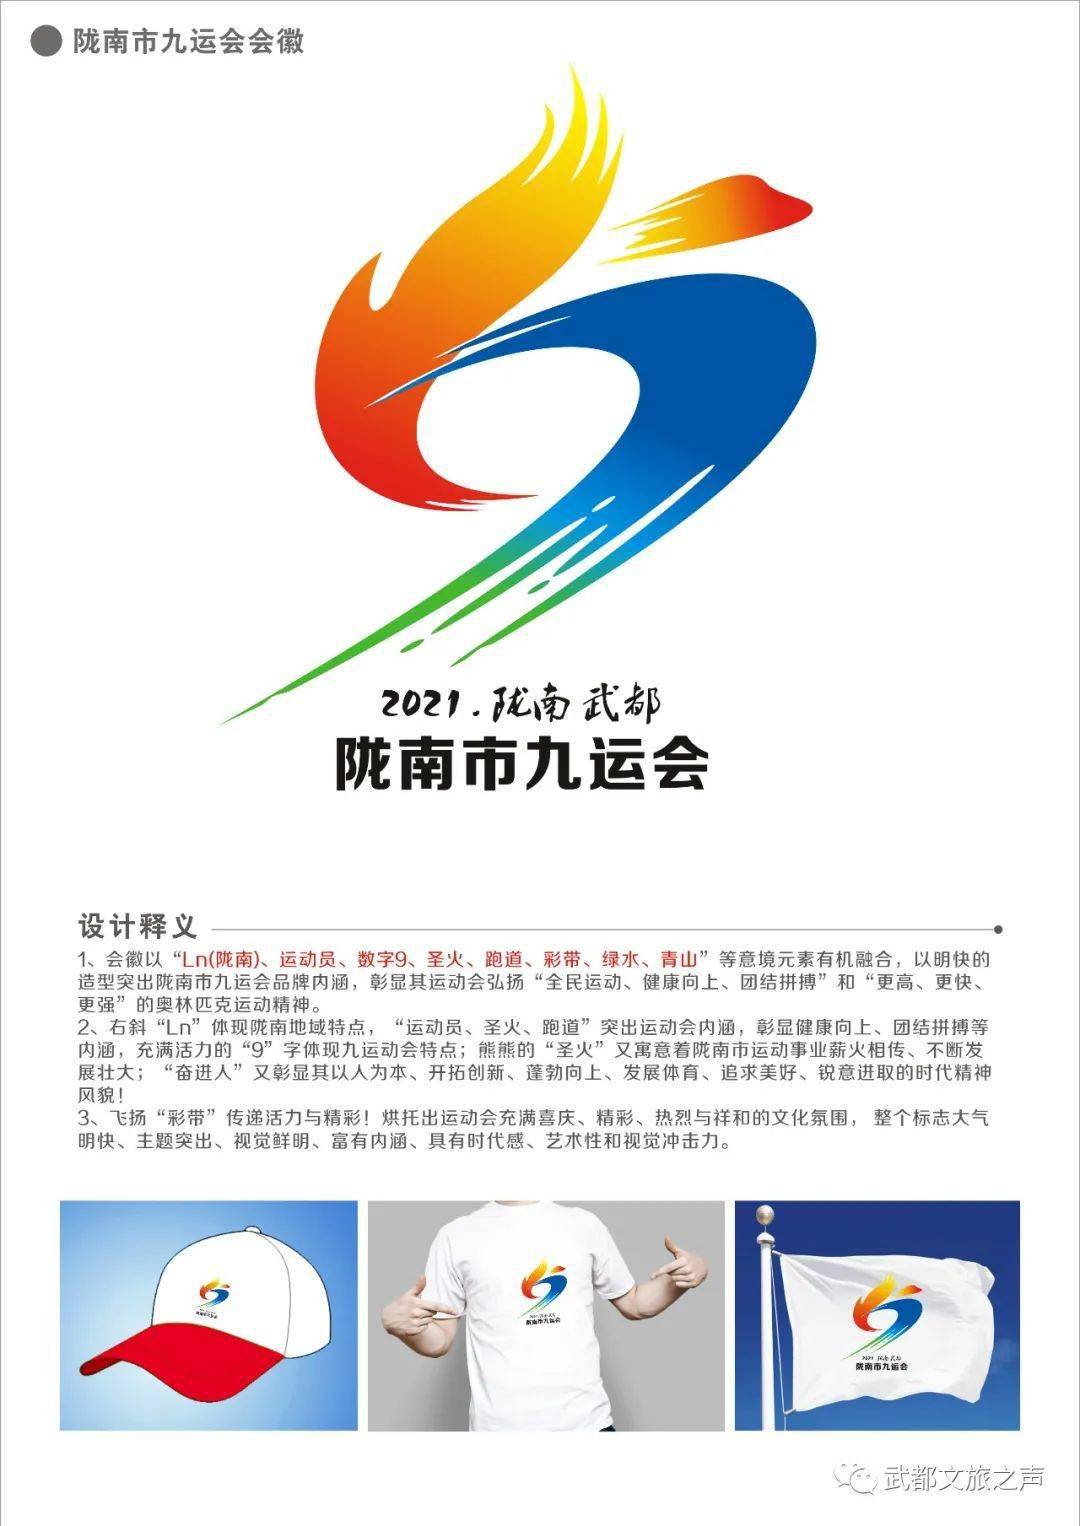 「风哥资讯」陇南市第九届运动会会徽,会歌,吉祥物入选及优秀作品